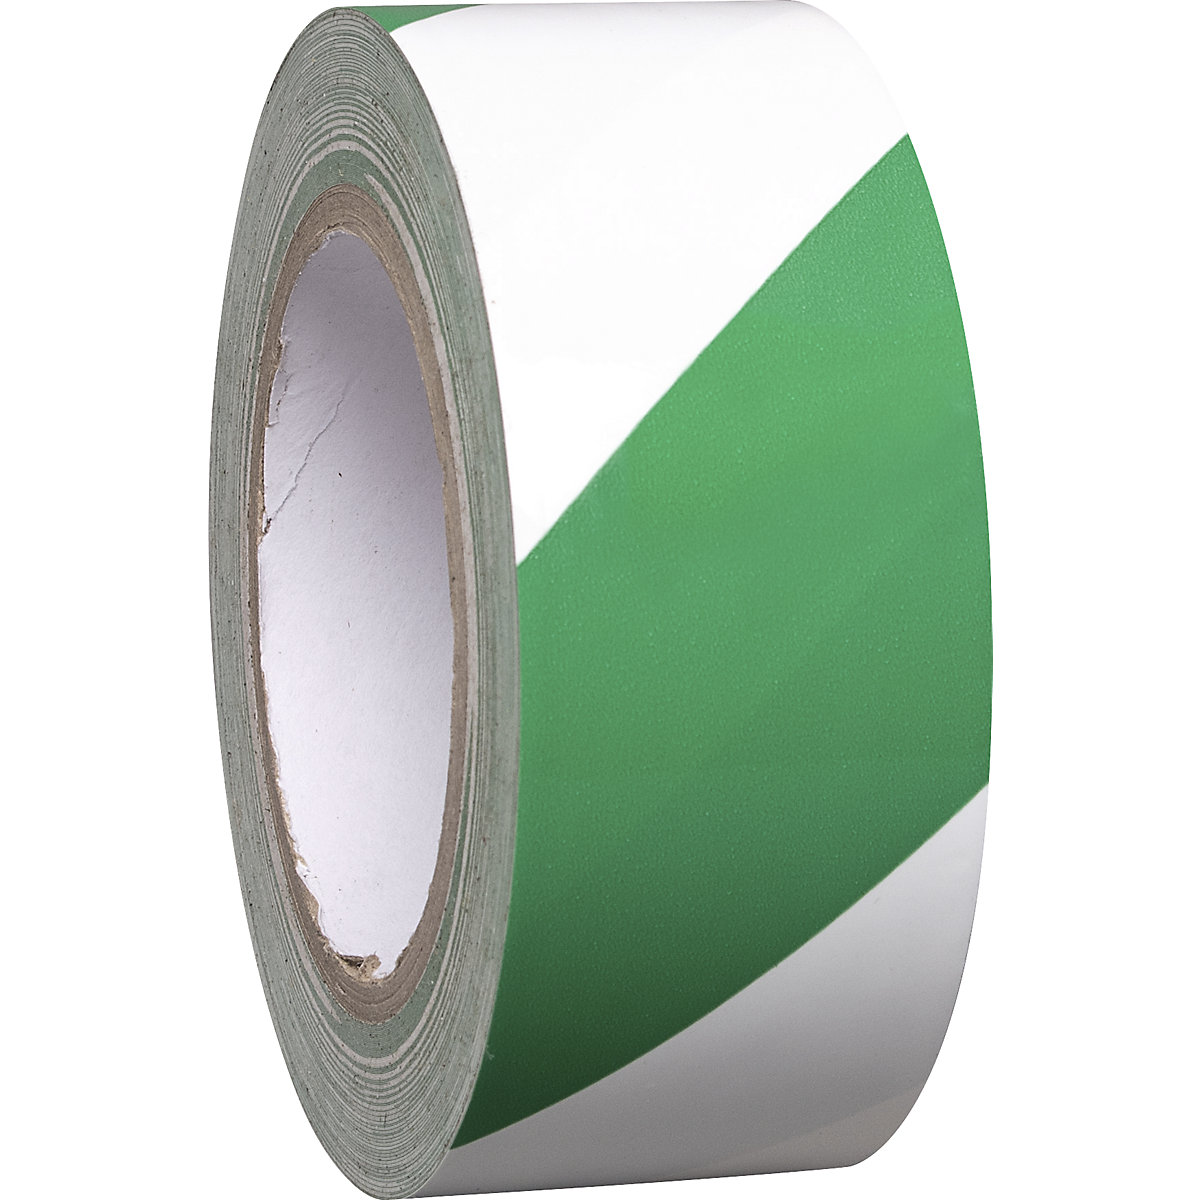 Bodenmarkierungsband aus Vinyl, zweifarbig, Breite 50 mm, grün / weiß, VE 8 Rollen-4